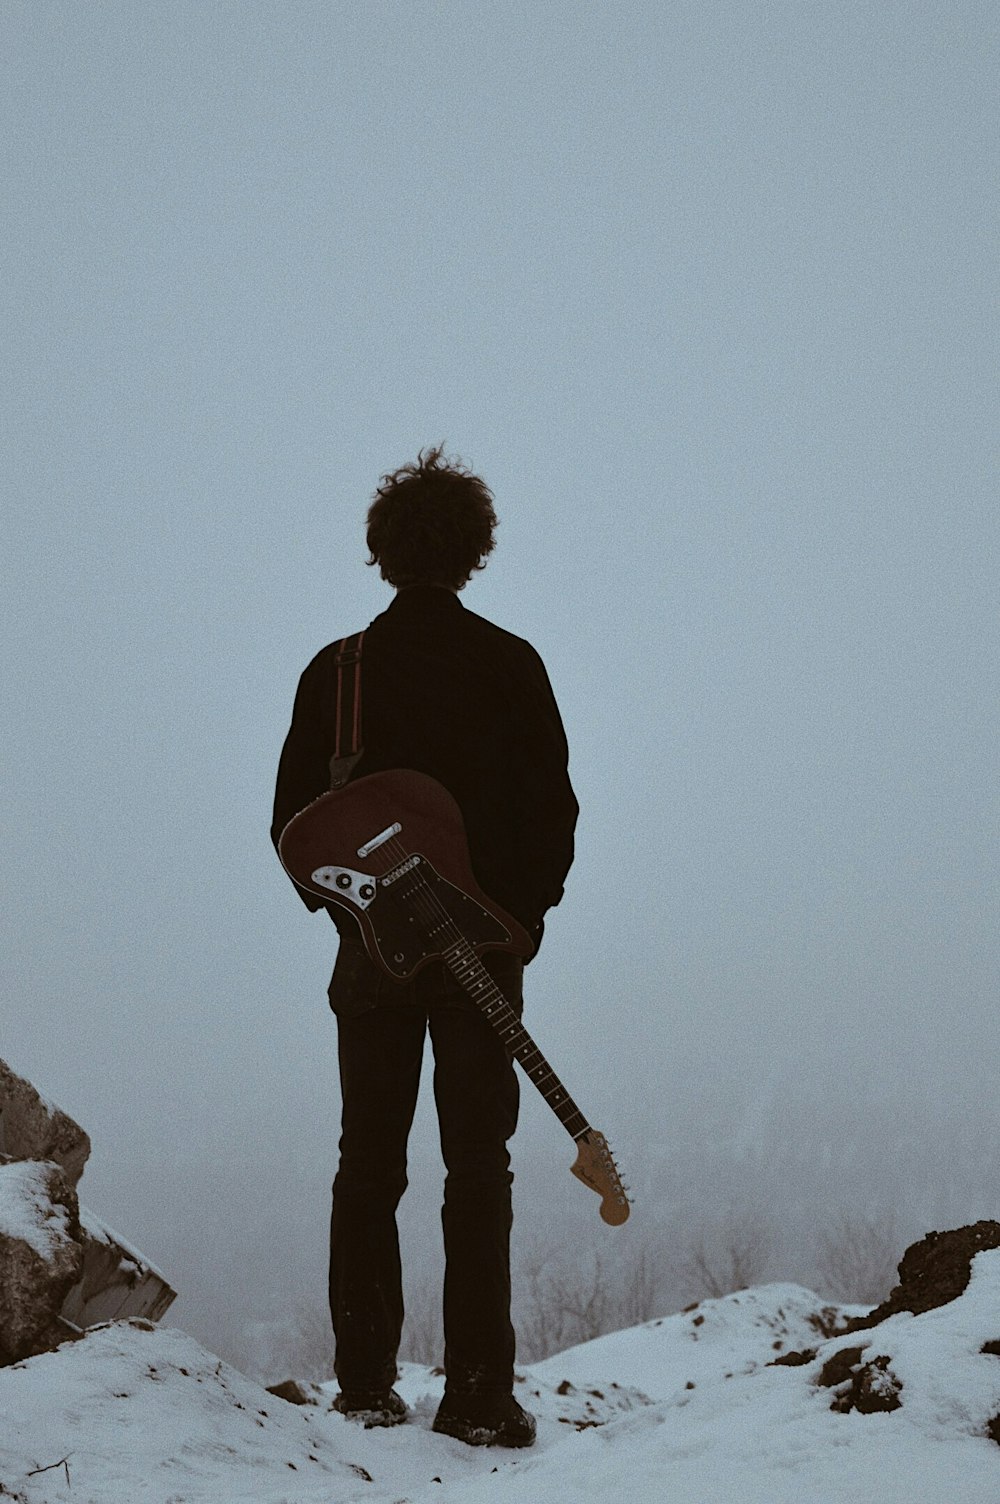 uomo con la chitarra sulla schiena in piedi sulla scogliera